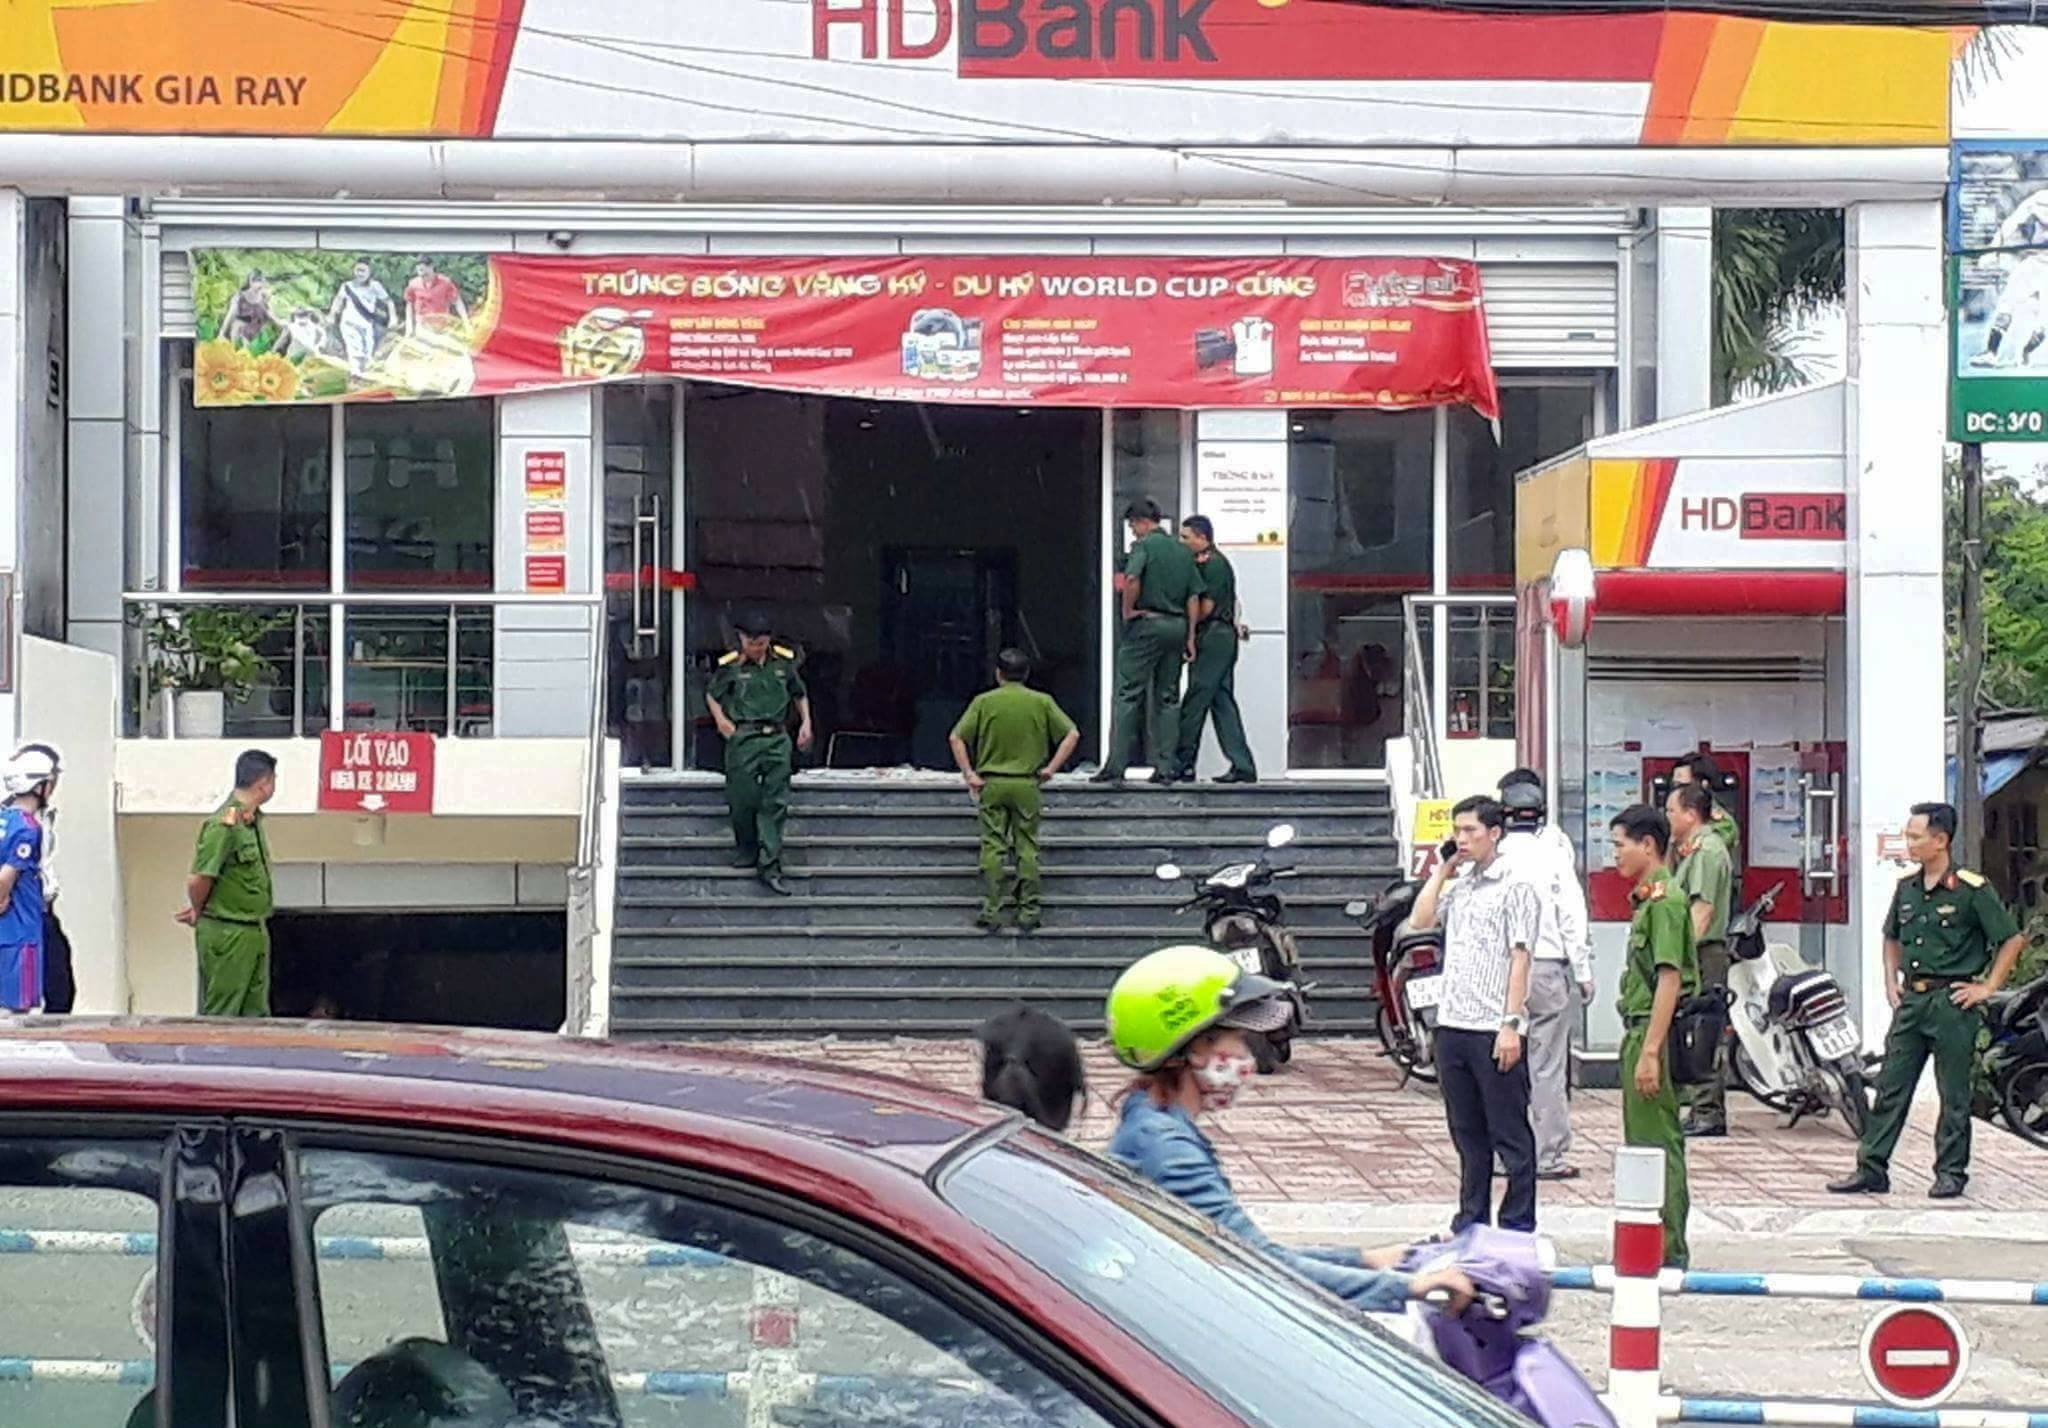 Táo tợn dùng vũ khí cướp ngân hàng giữa ban ngày ở Đồng Nai - 1